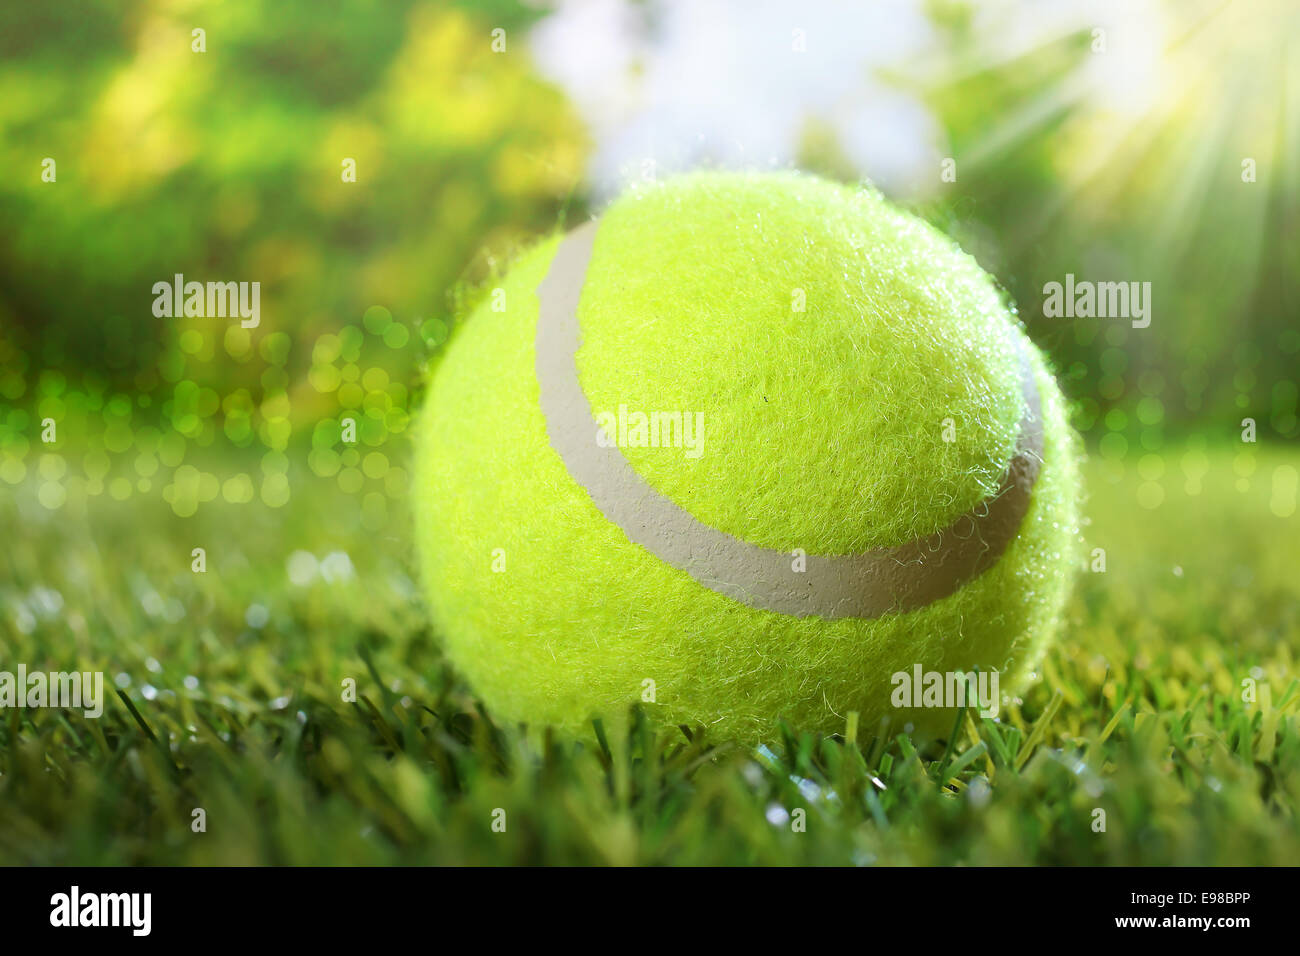 Tennisball auf dem grünen Rasen unter den heißen Strahlen der Sommersonne konzeptionelle Freiheit und Freude an einem sportlichen gesund im freien Stockfoto